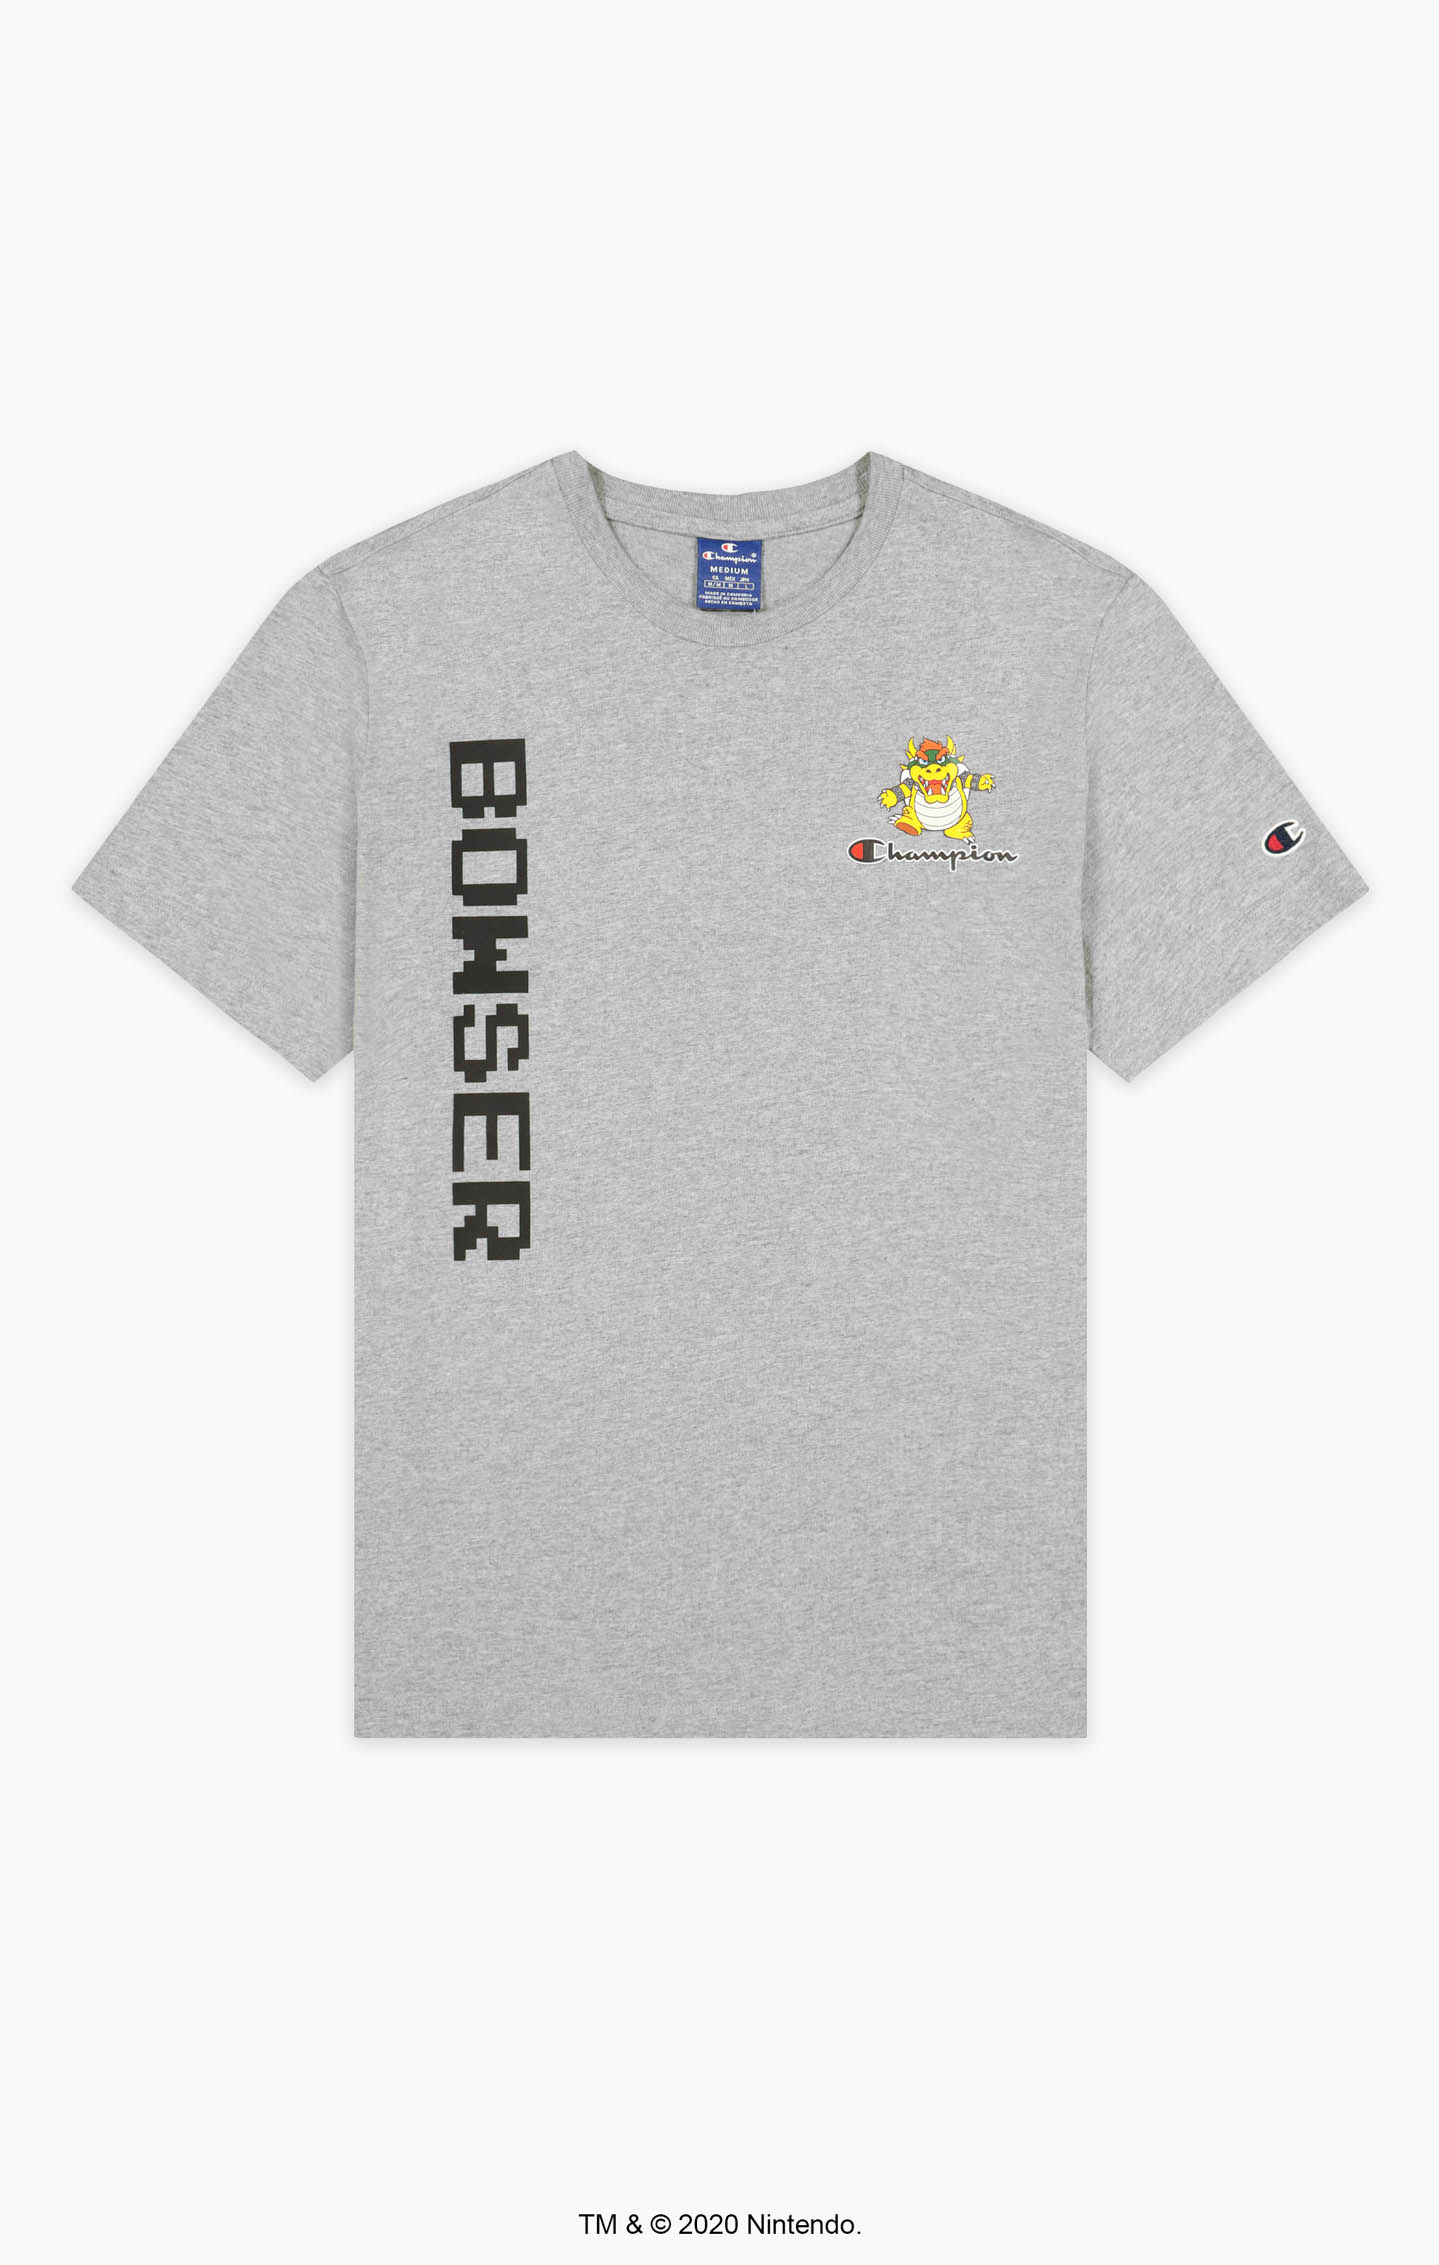 Champion Unisex T-Shirt Super Mario Bros